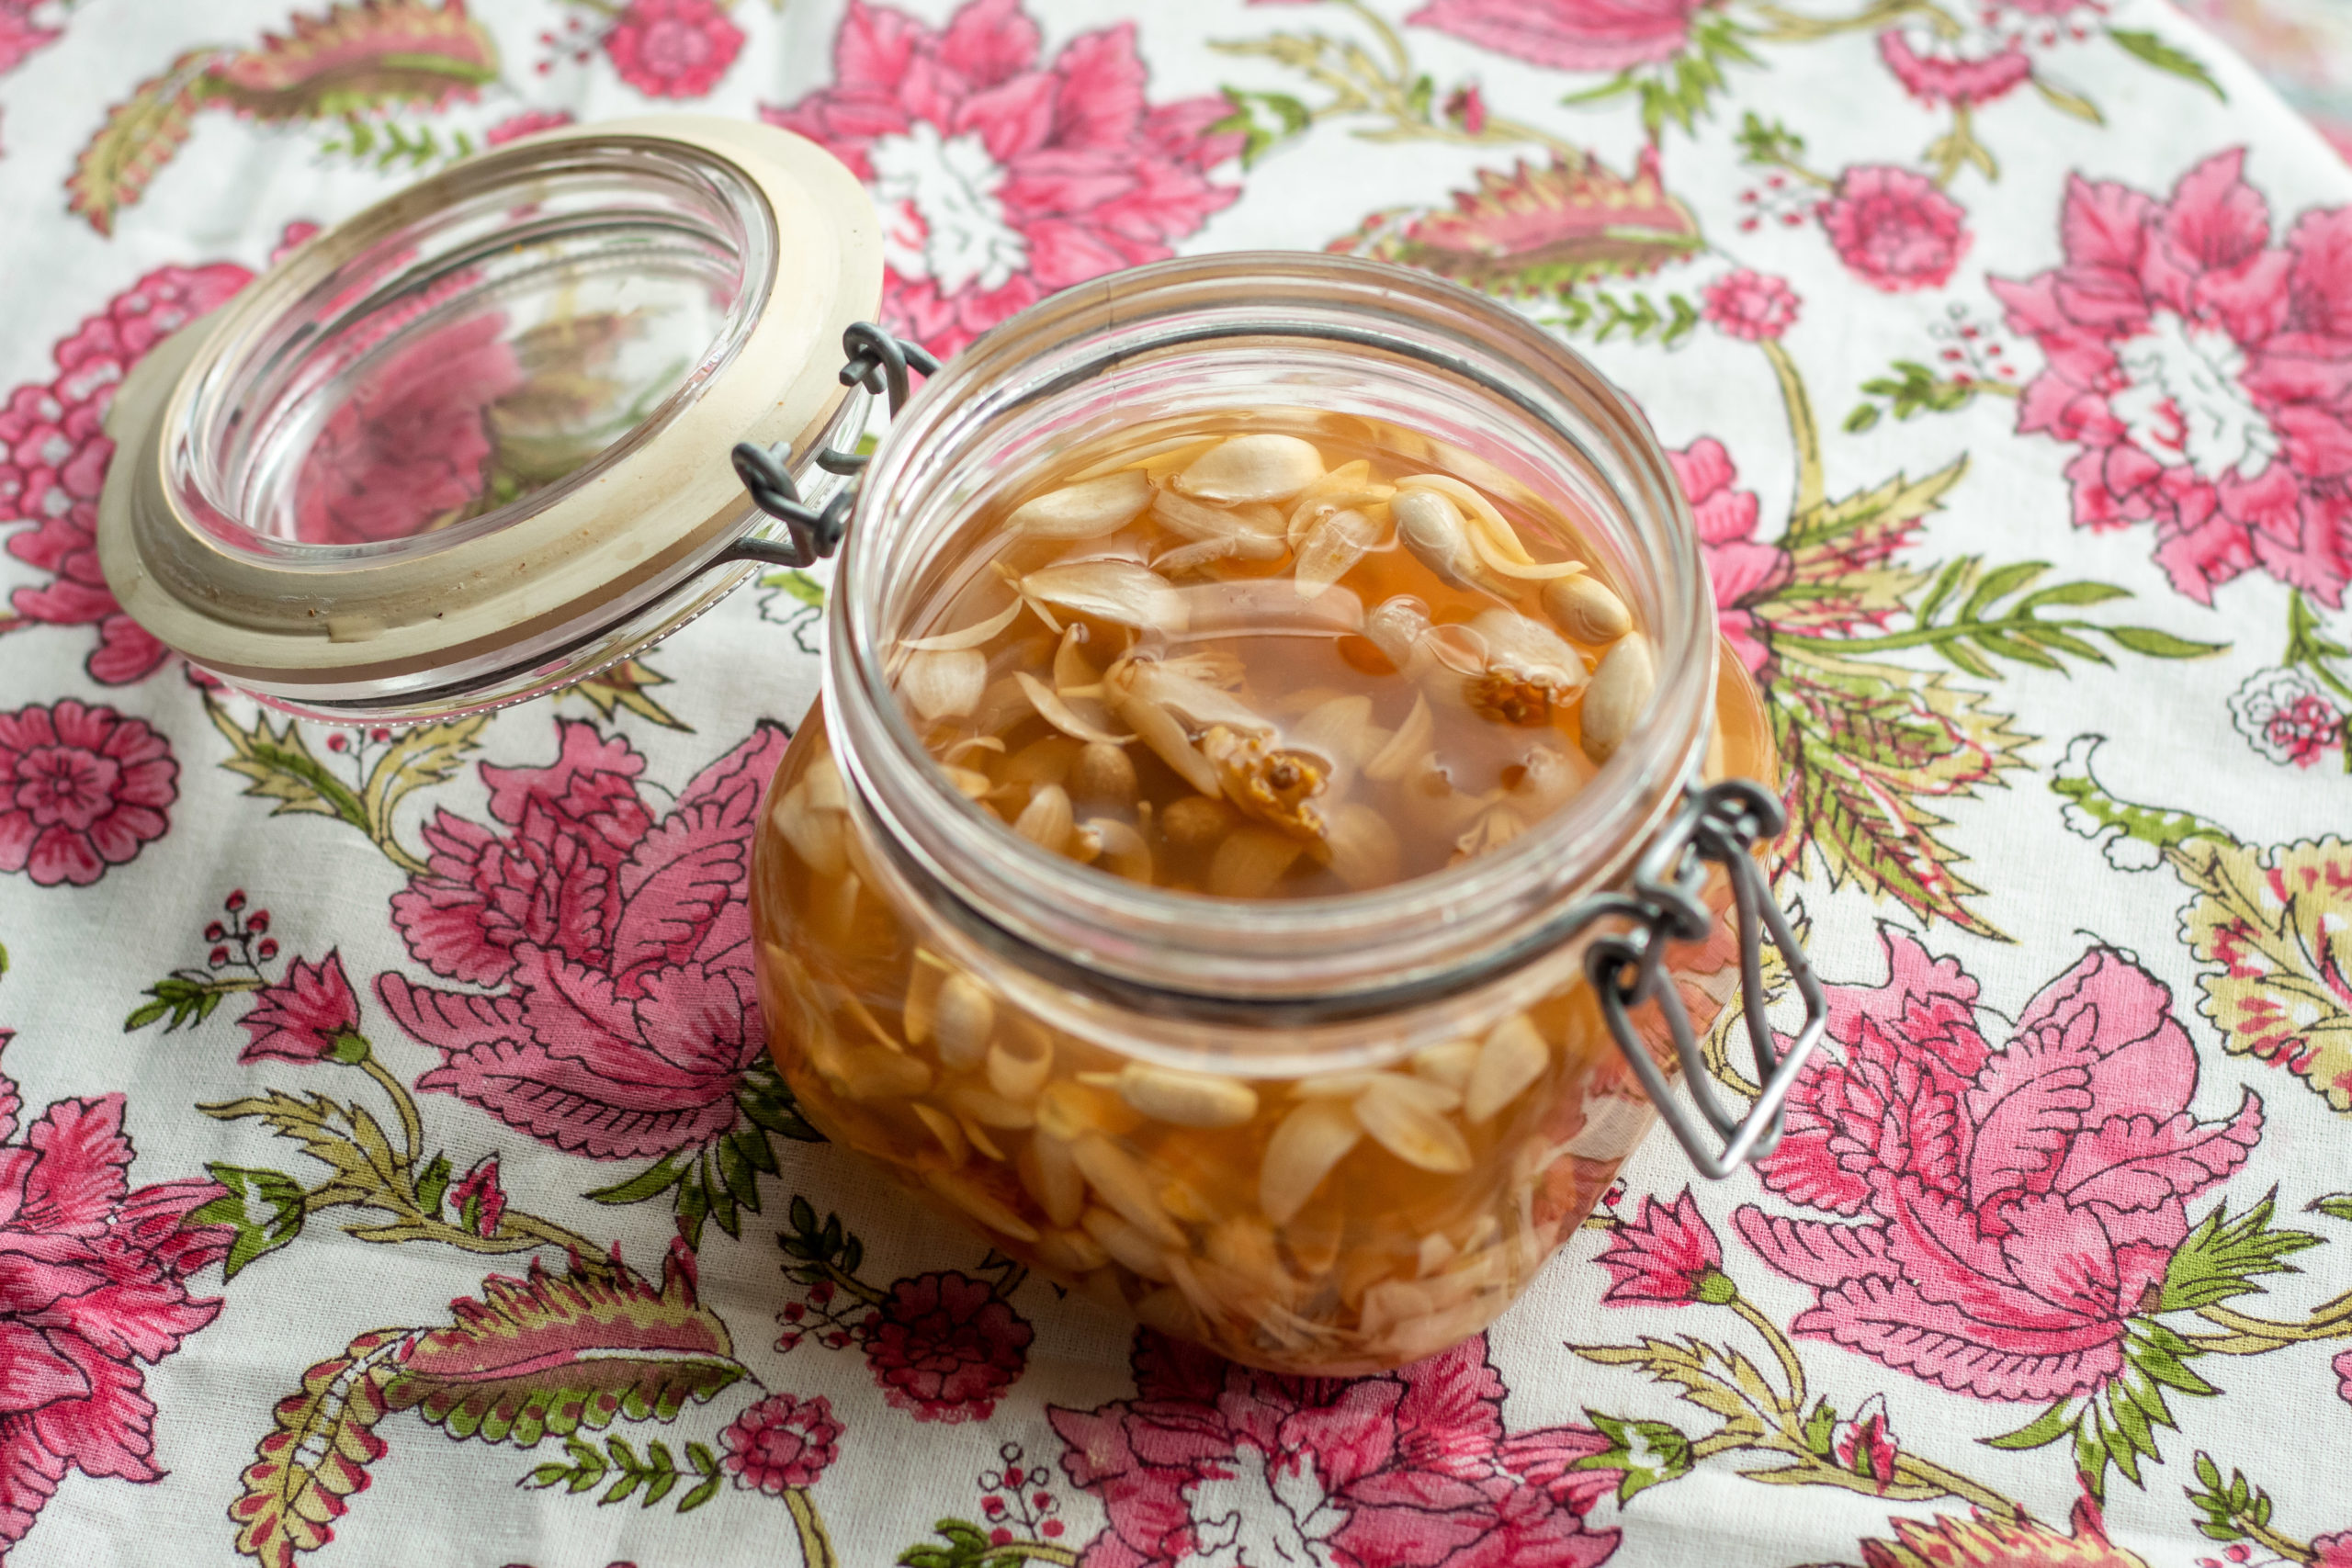 Preserved orange blossoms in vinegar in a glass jar